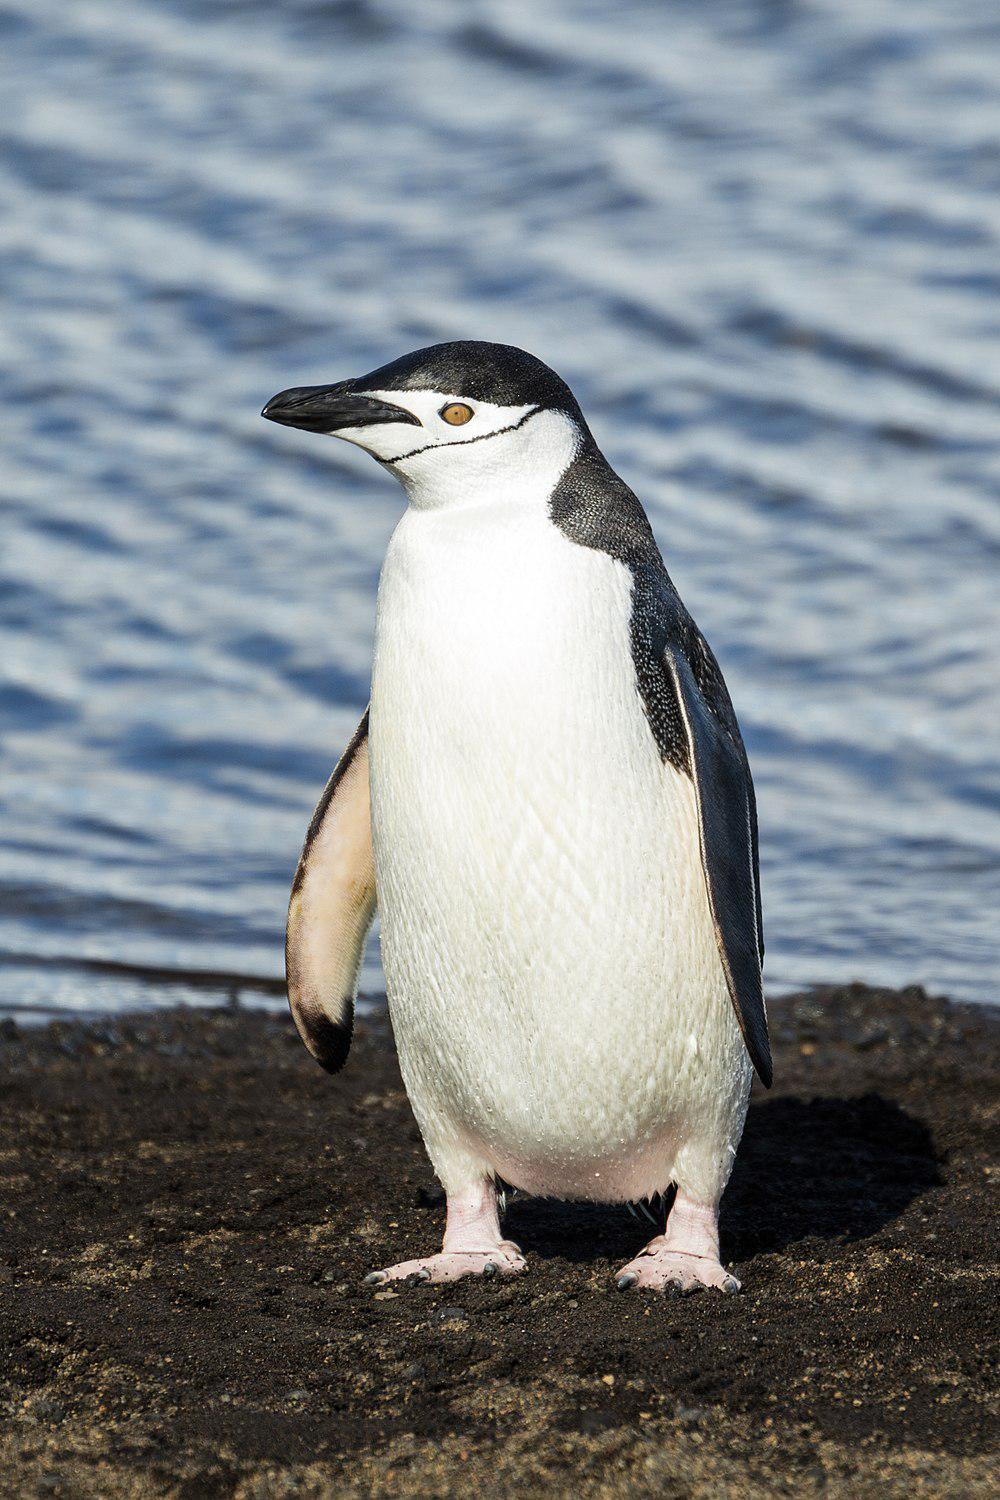 纹颊企鹅 / Chinstrap Penguin / Pygoscelis antarcticus